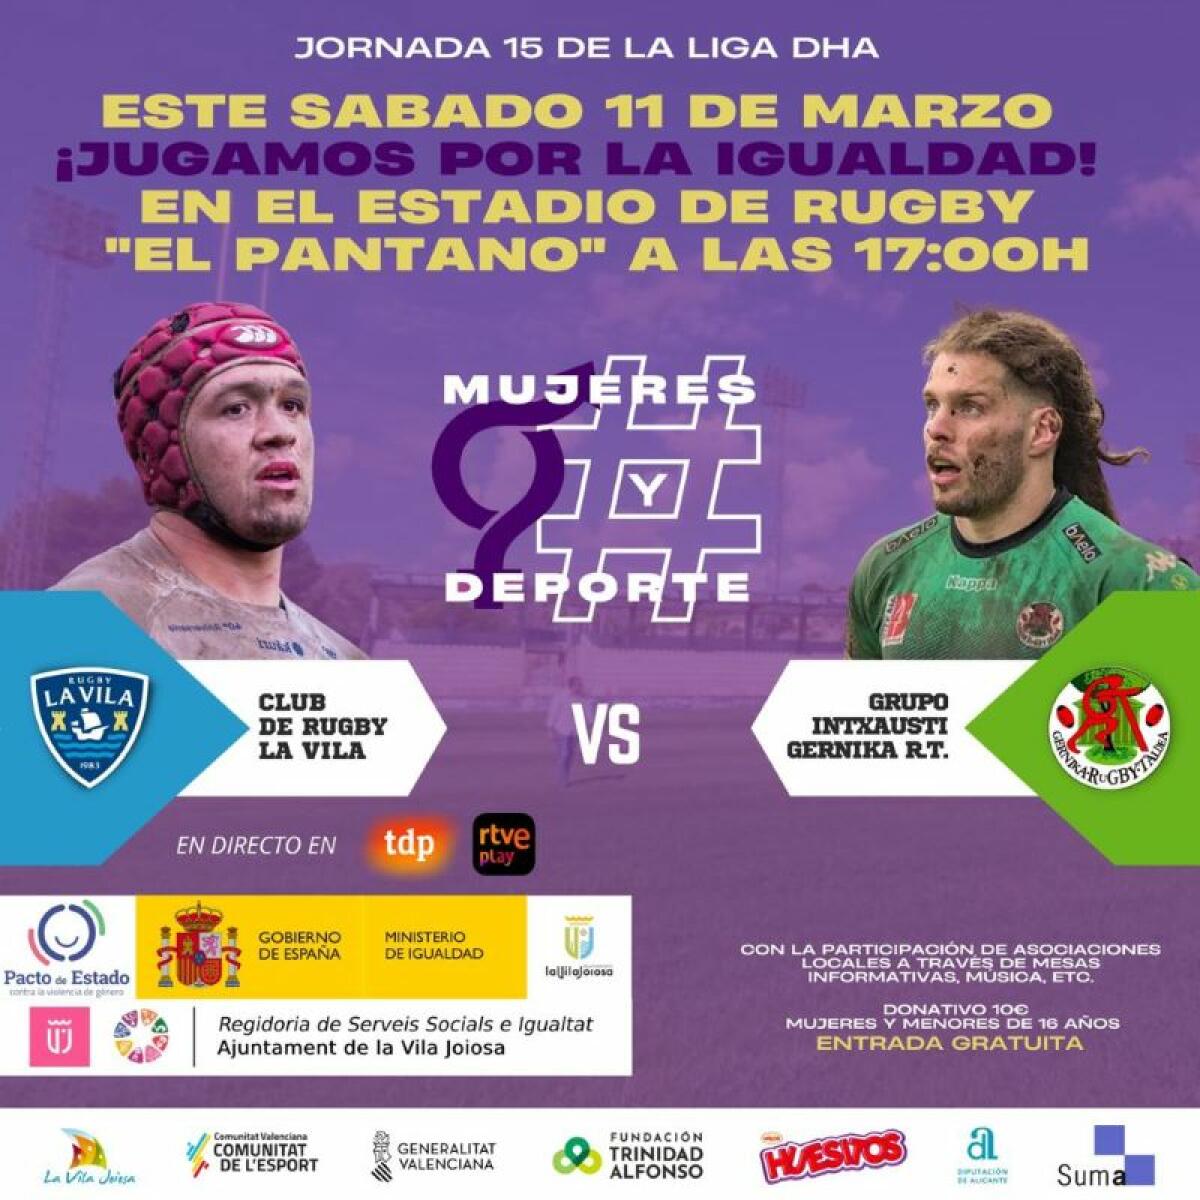 El próximo sábado el Club de Rugby La Vila marca ensayo por la igualdad